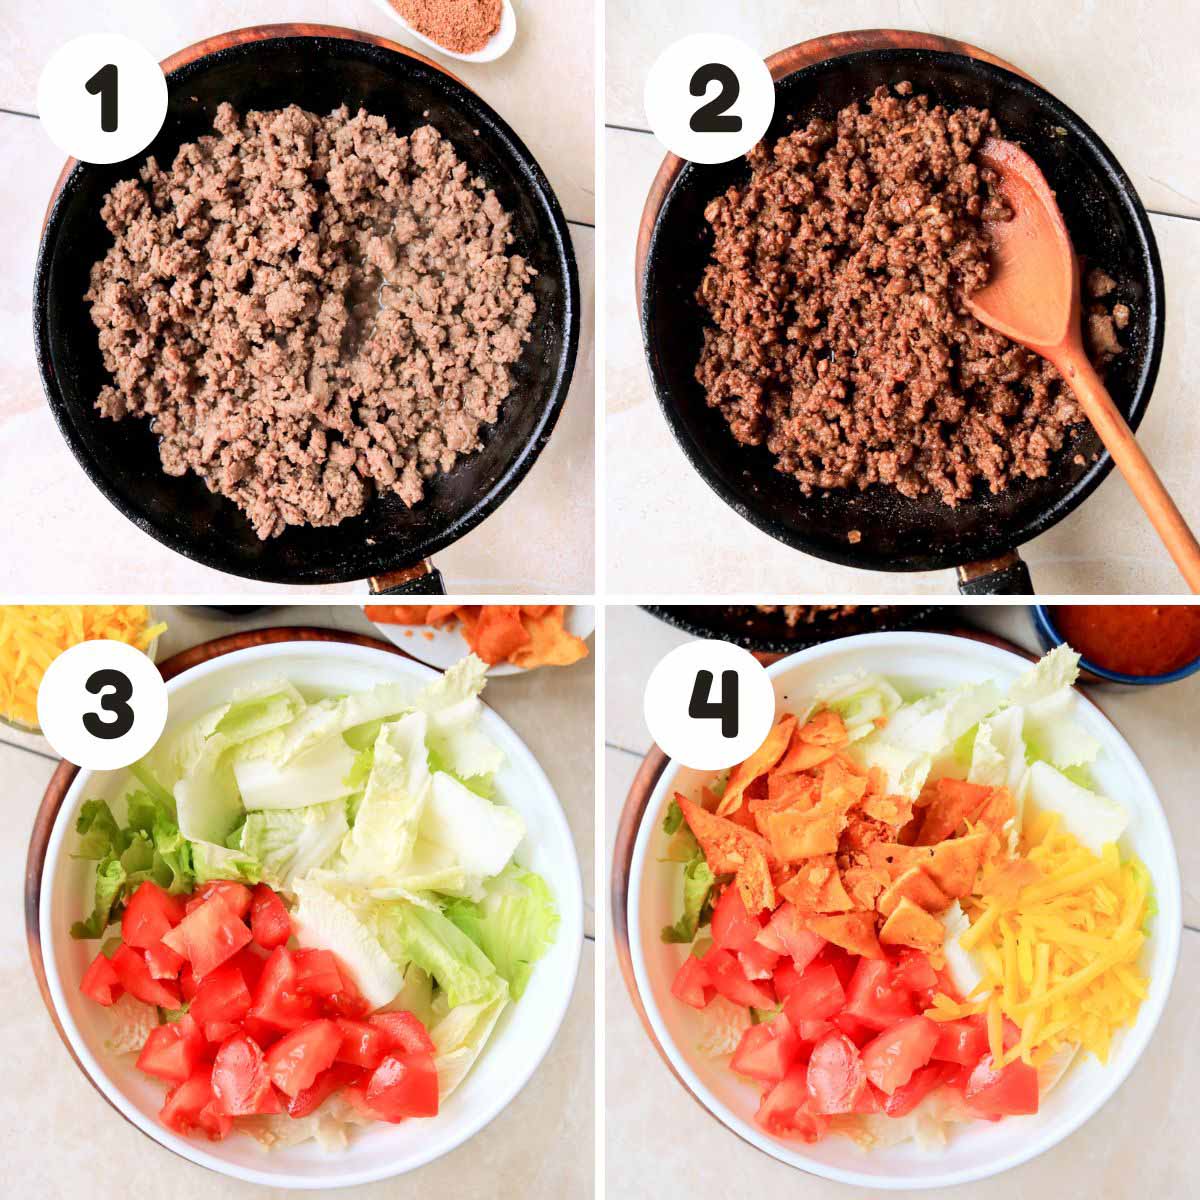 Steps to make the taco salad.